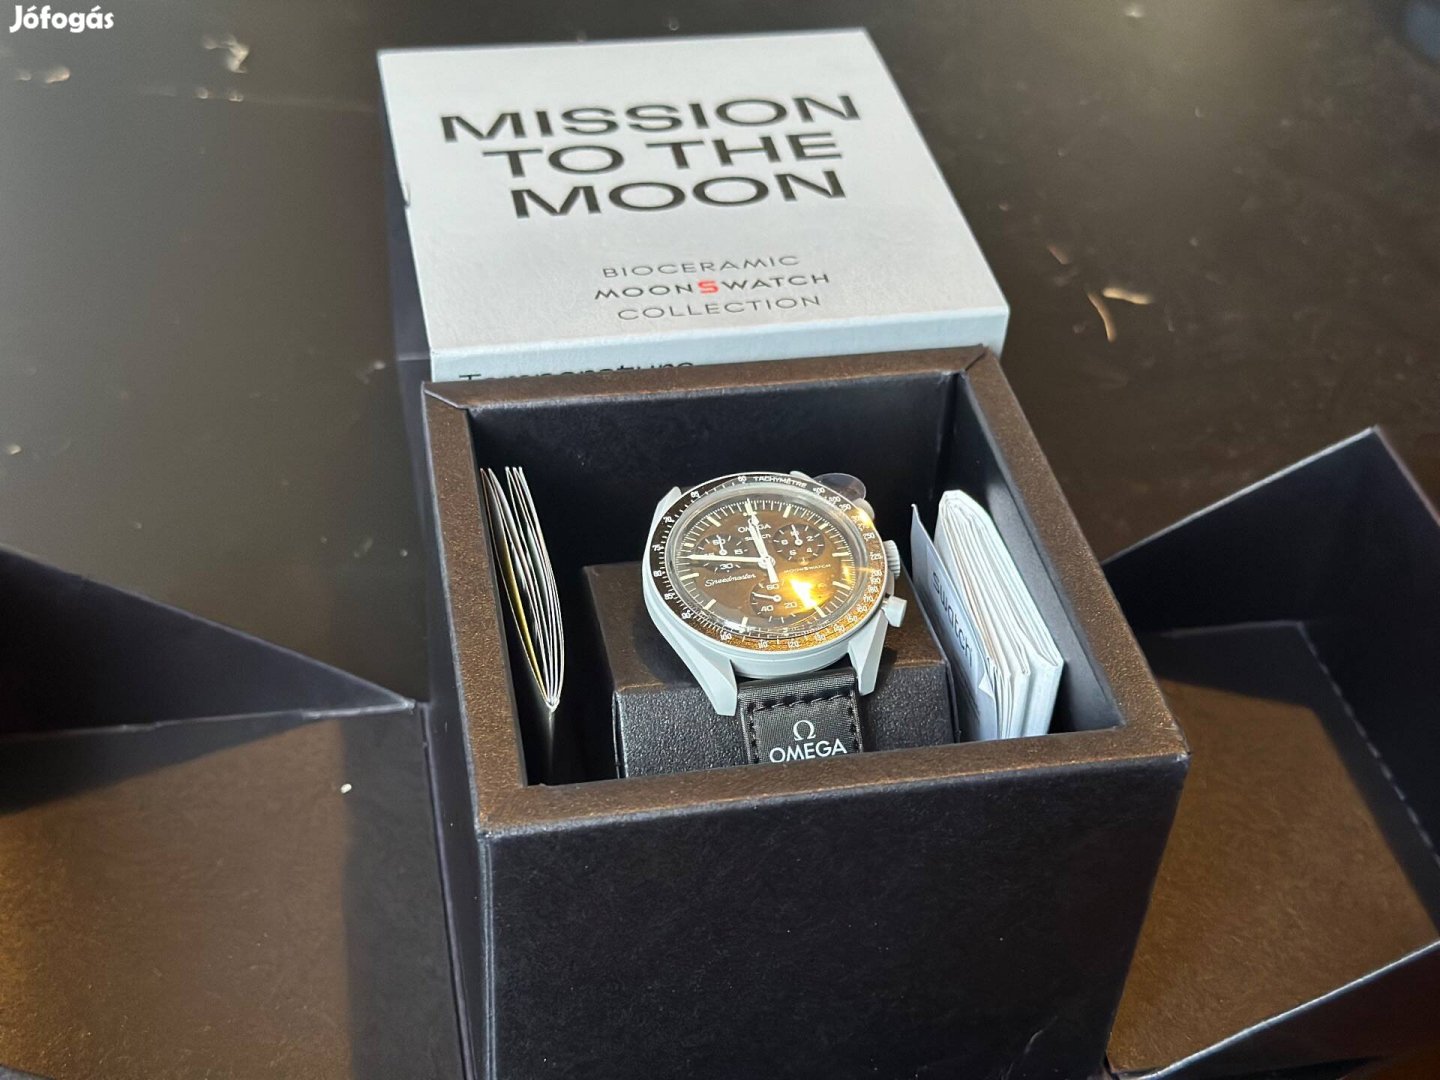 Eladó új, bontatlan Mission to Moon!